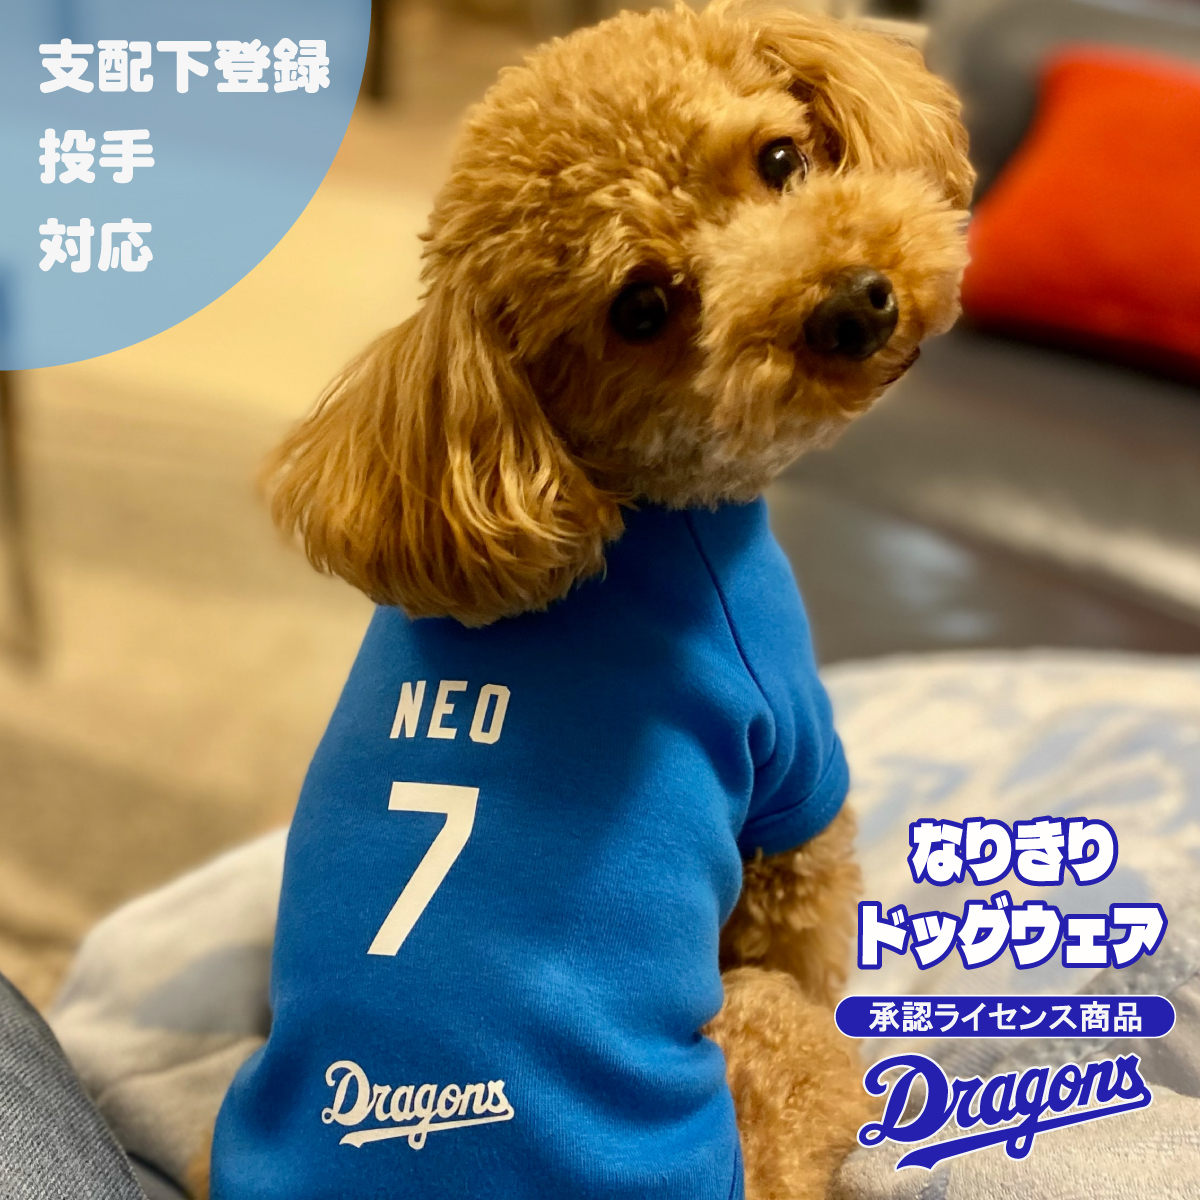  ドラゴンズ ドッグウェア 承認ライセンス 日本製 選手 ドアラ ユニフォーム 名前 オリジナル 犬の服 犬 服 Dragons 応援グッズ プレゼント ギフト